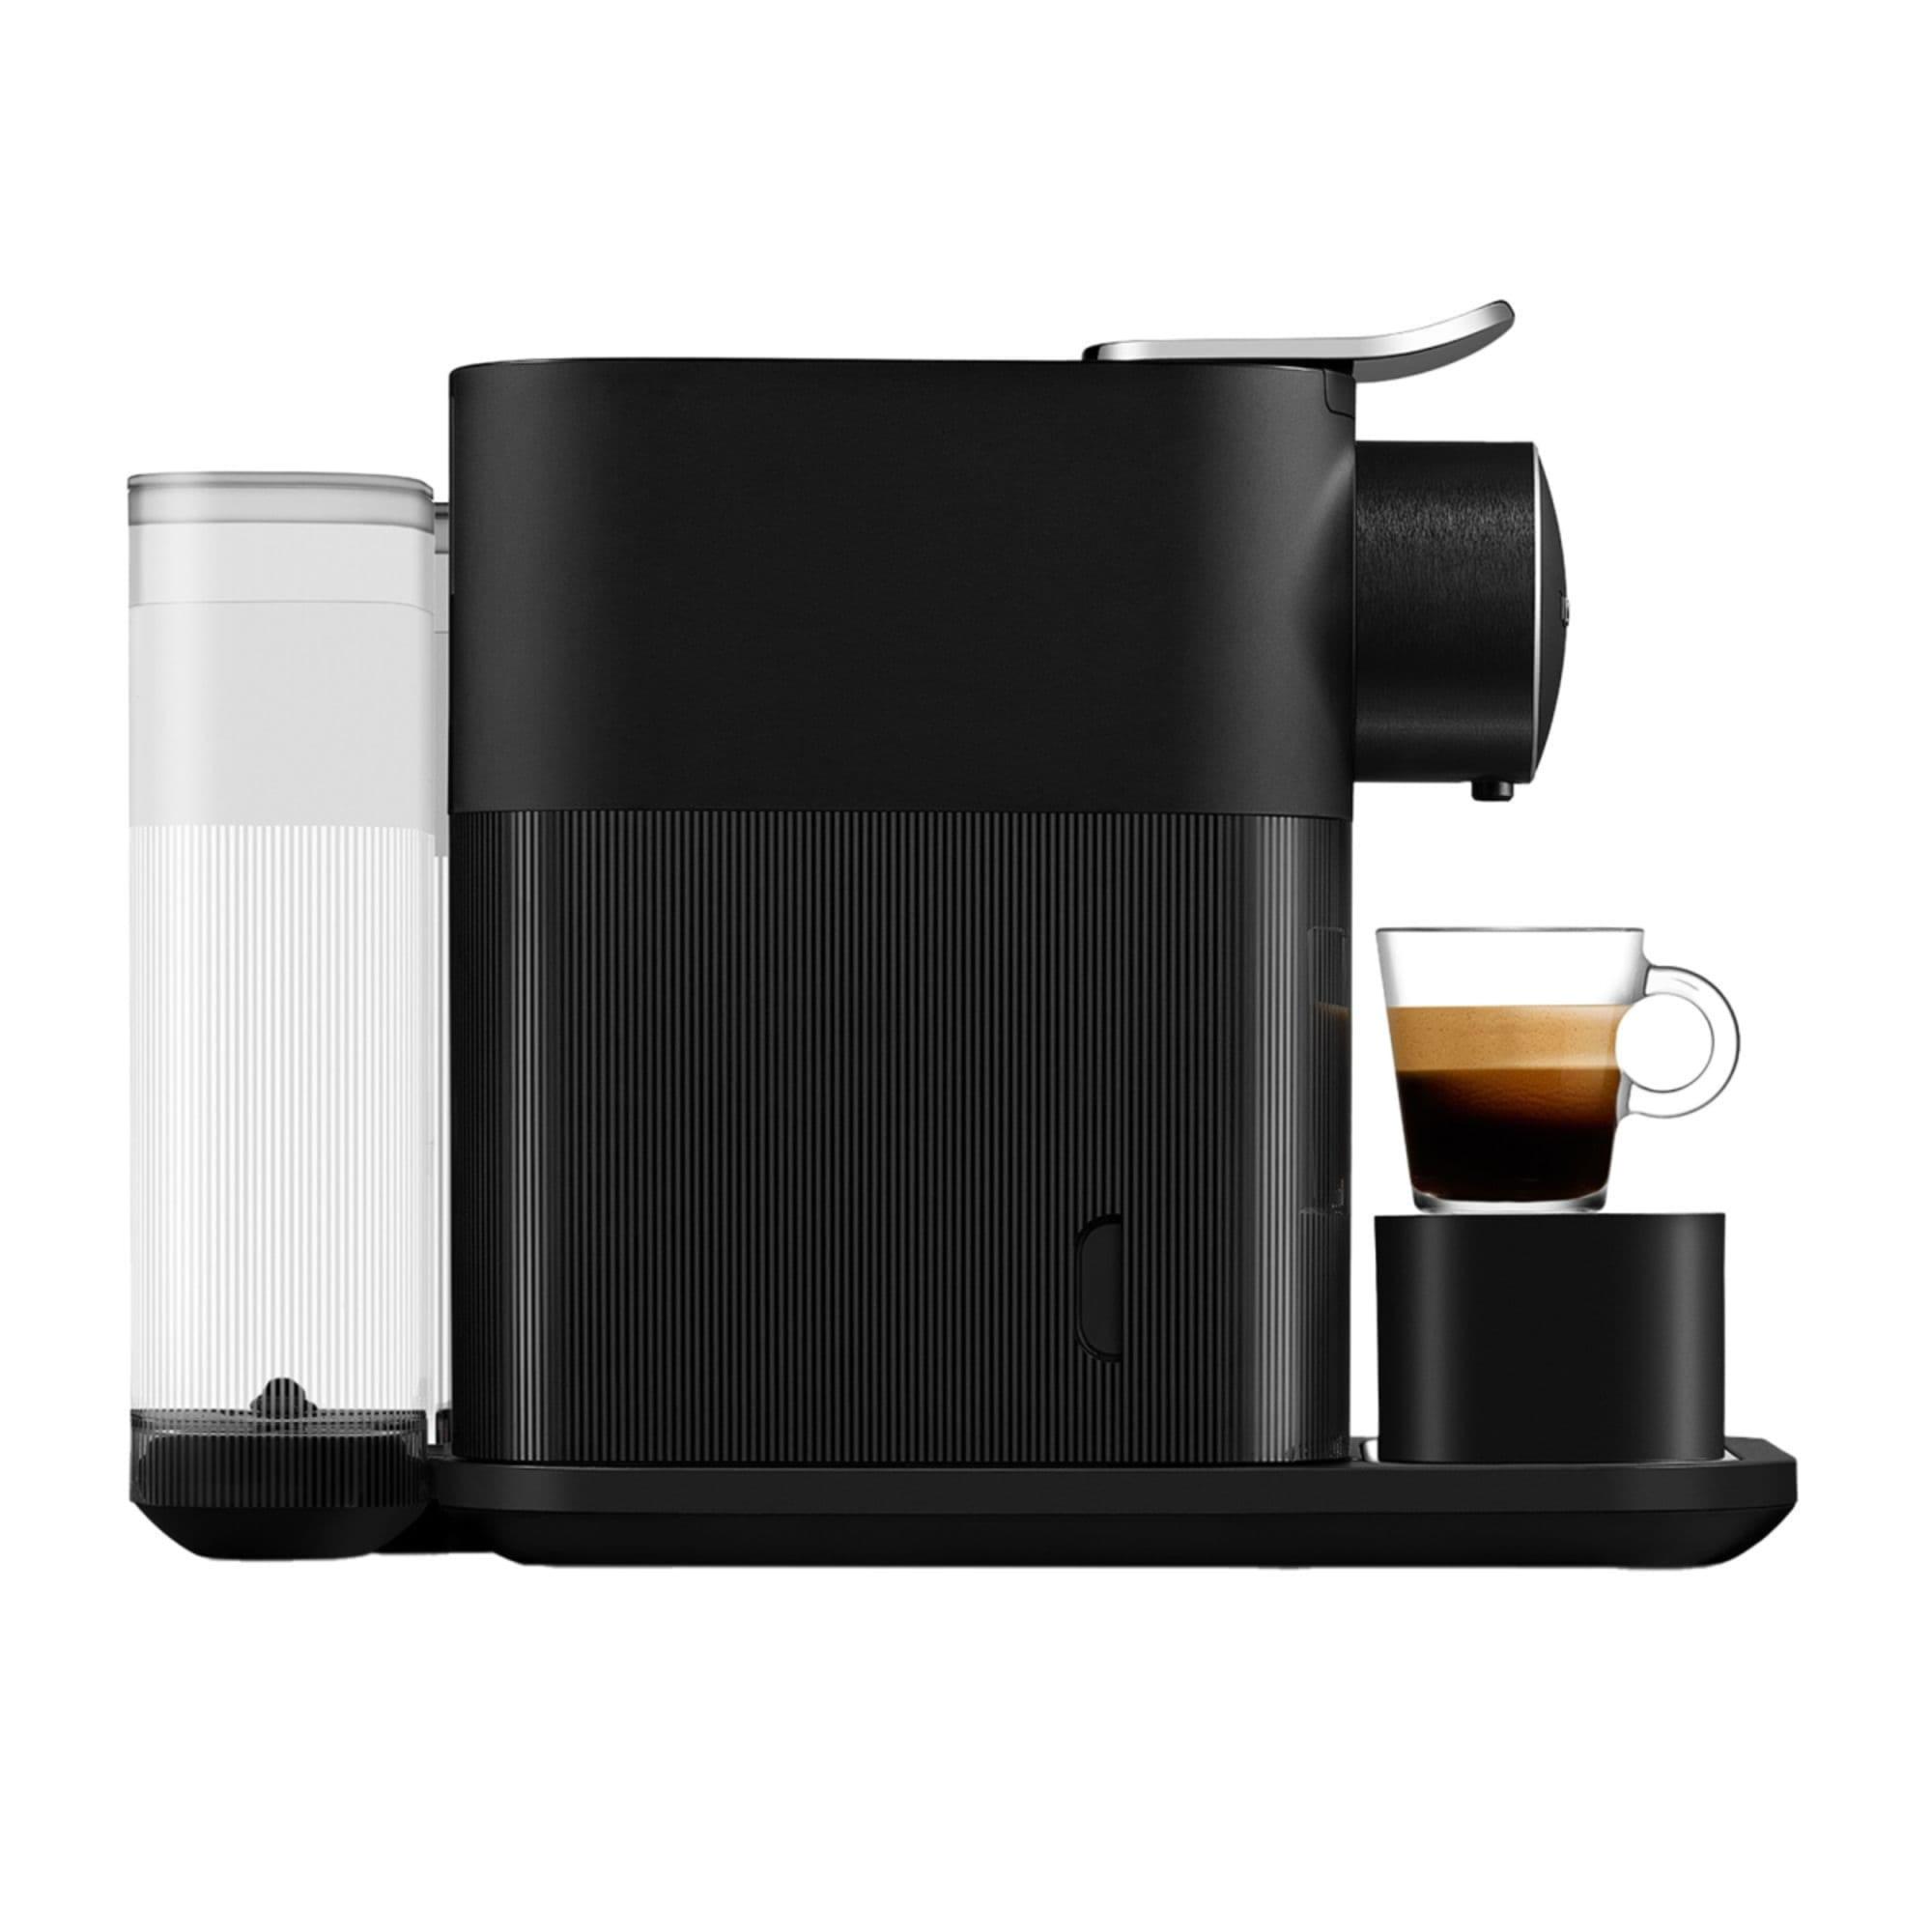 DeLonghi Nespresso Gran Lattisima EN640B Automatic Capsule Coffee Machine Black Image 4